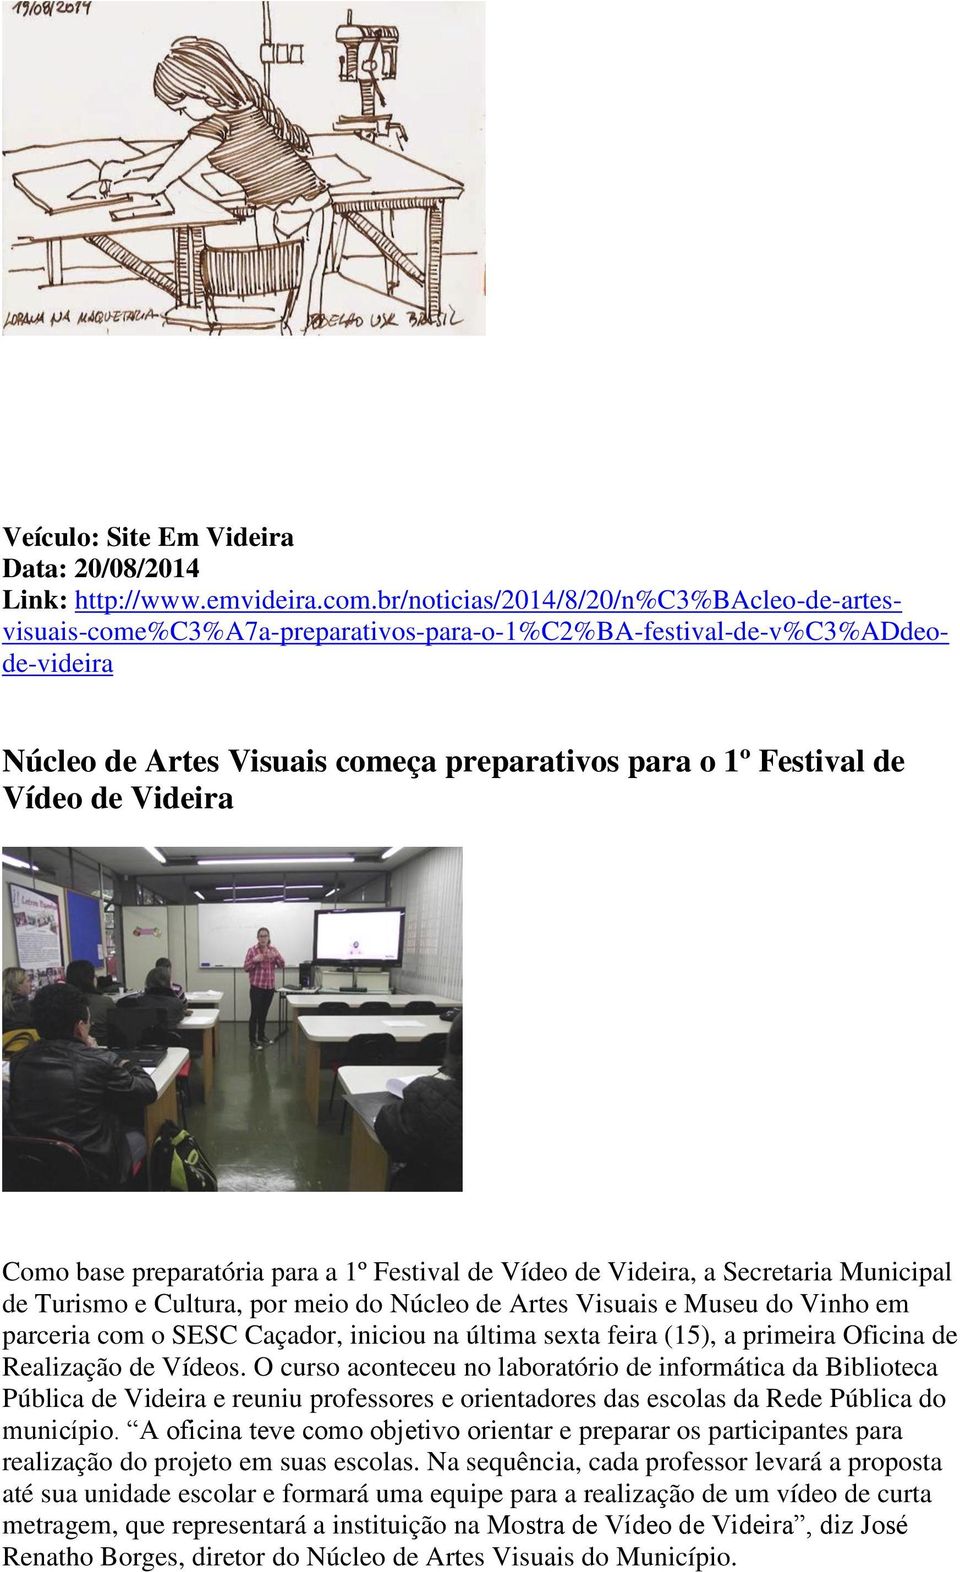 Videira Como base preparatória para a 1º Festival de Vídeo de Videira, a Secretaria Municipal de Turismo e Cultura, por meio do Núcleo de Artes Visuais e Museu do Vinho em parceria com o SESC